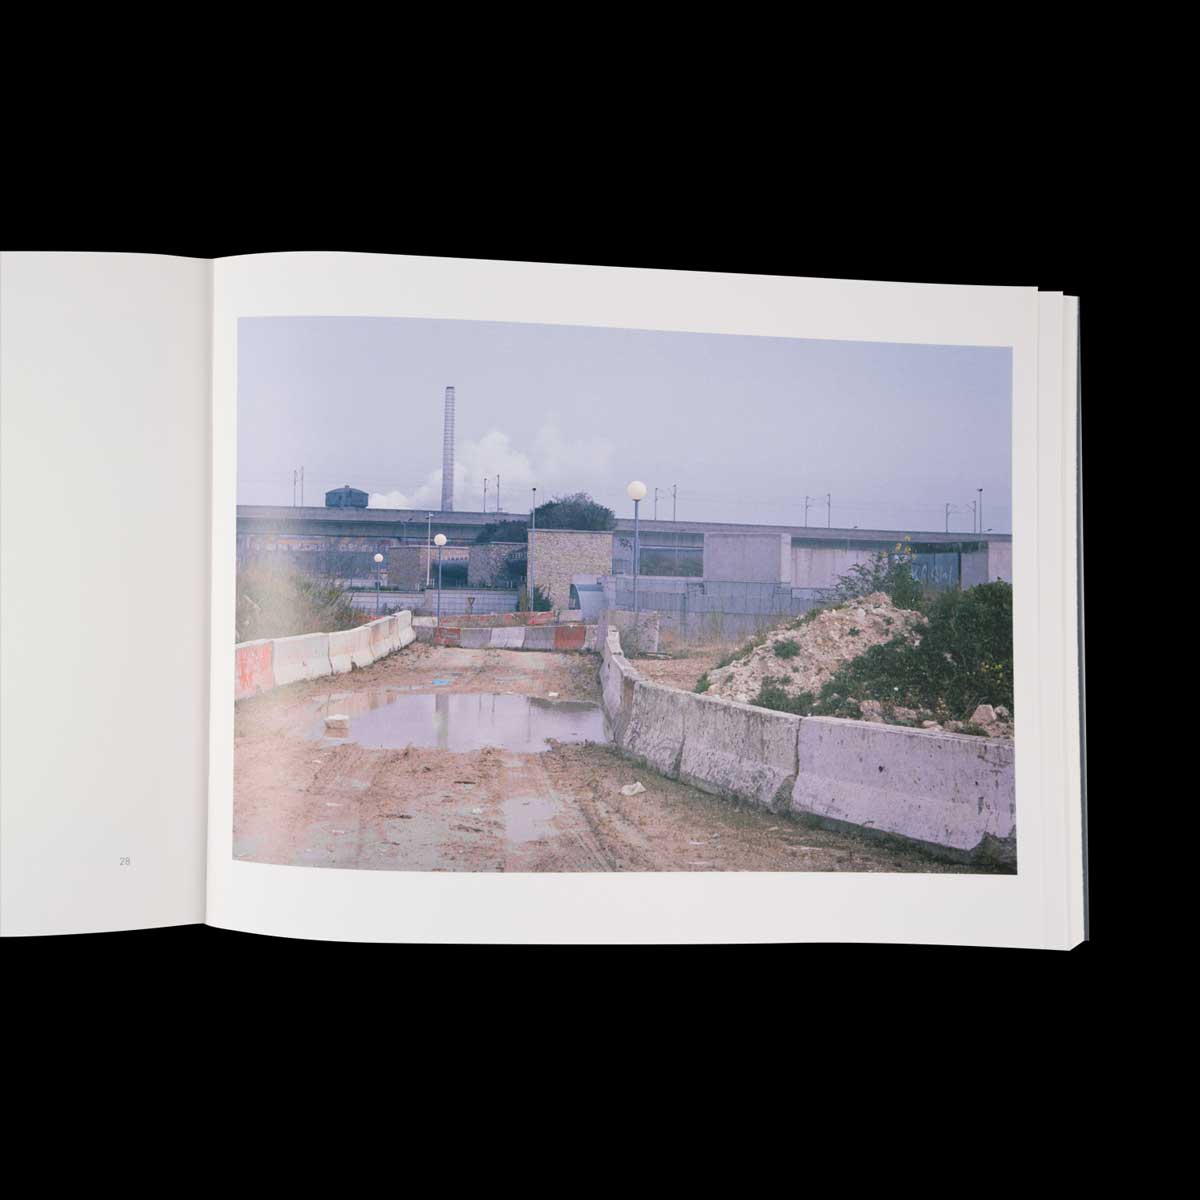 Autour/Around, Photographies de Benoît Fougeirol, poèmes de Michaël Batalla, tiré à 1000 exemplaires, édition VMCF, Keanu Reeves.